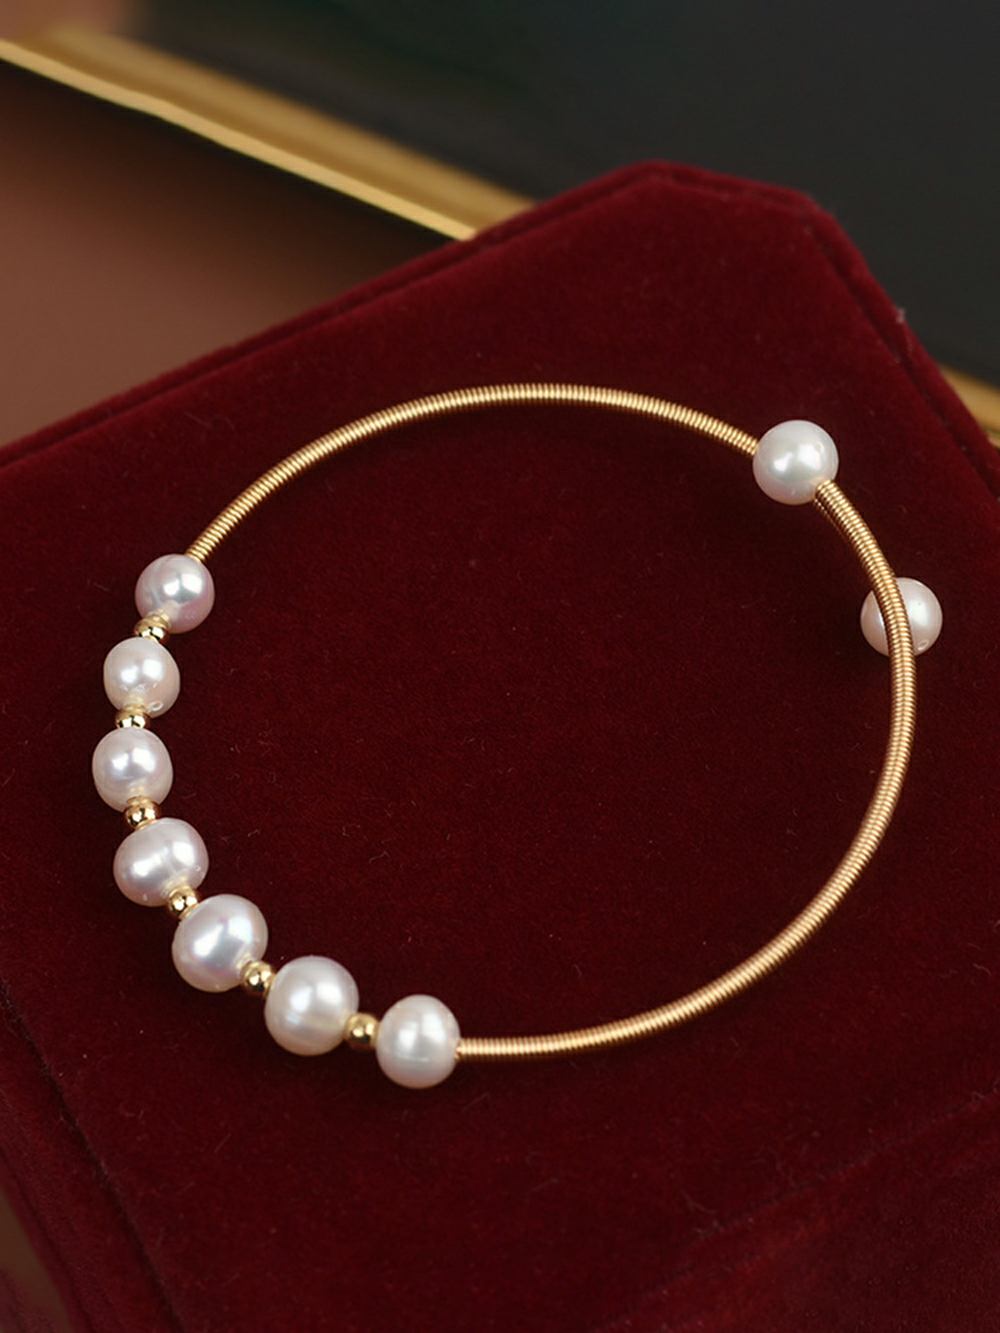 Bracciale regolabile con delicate perle naturali